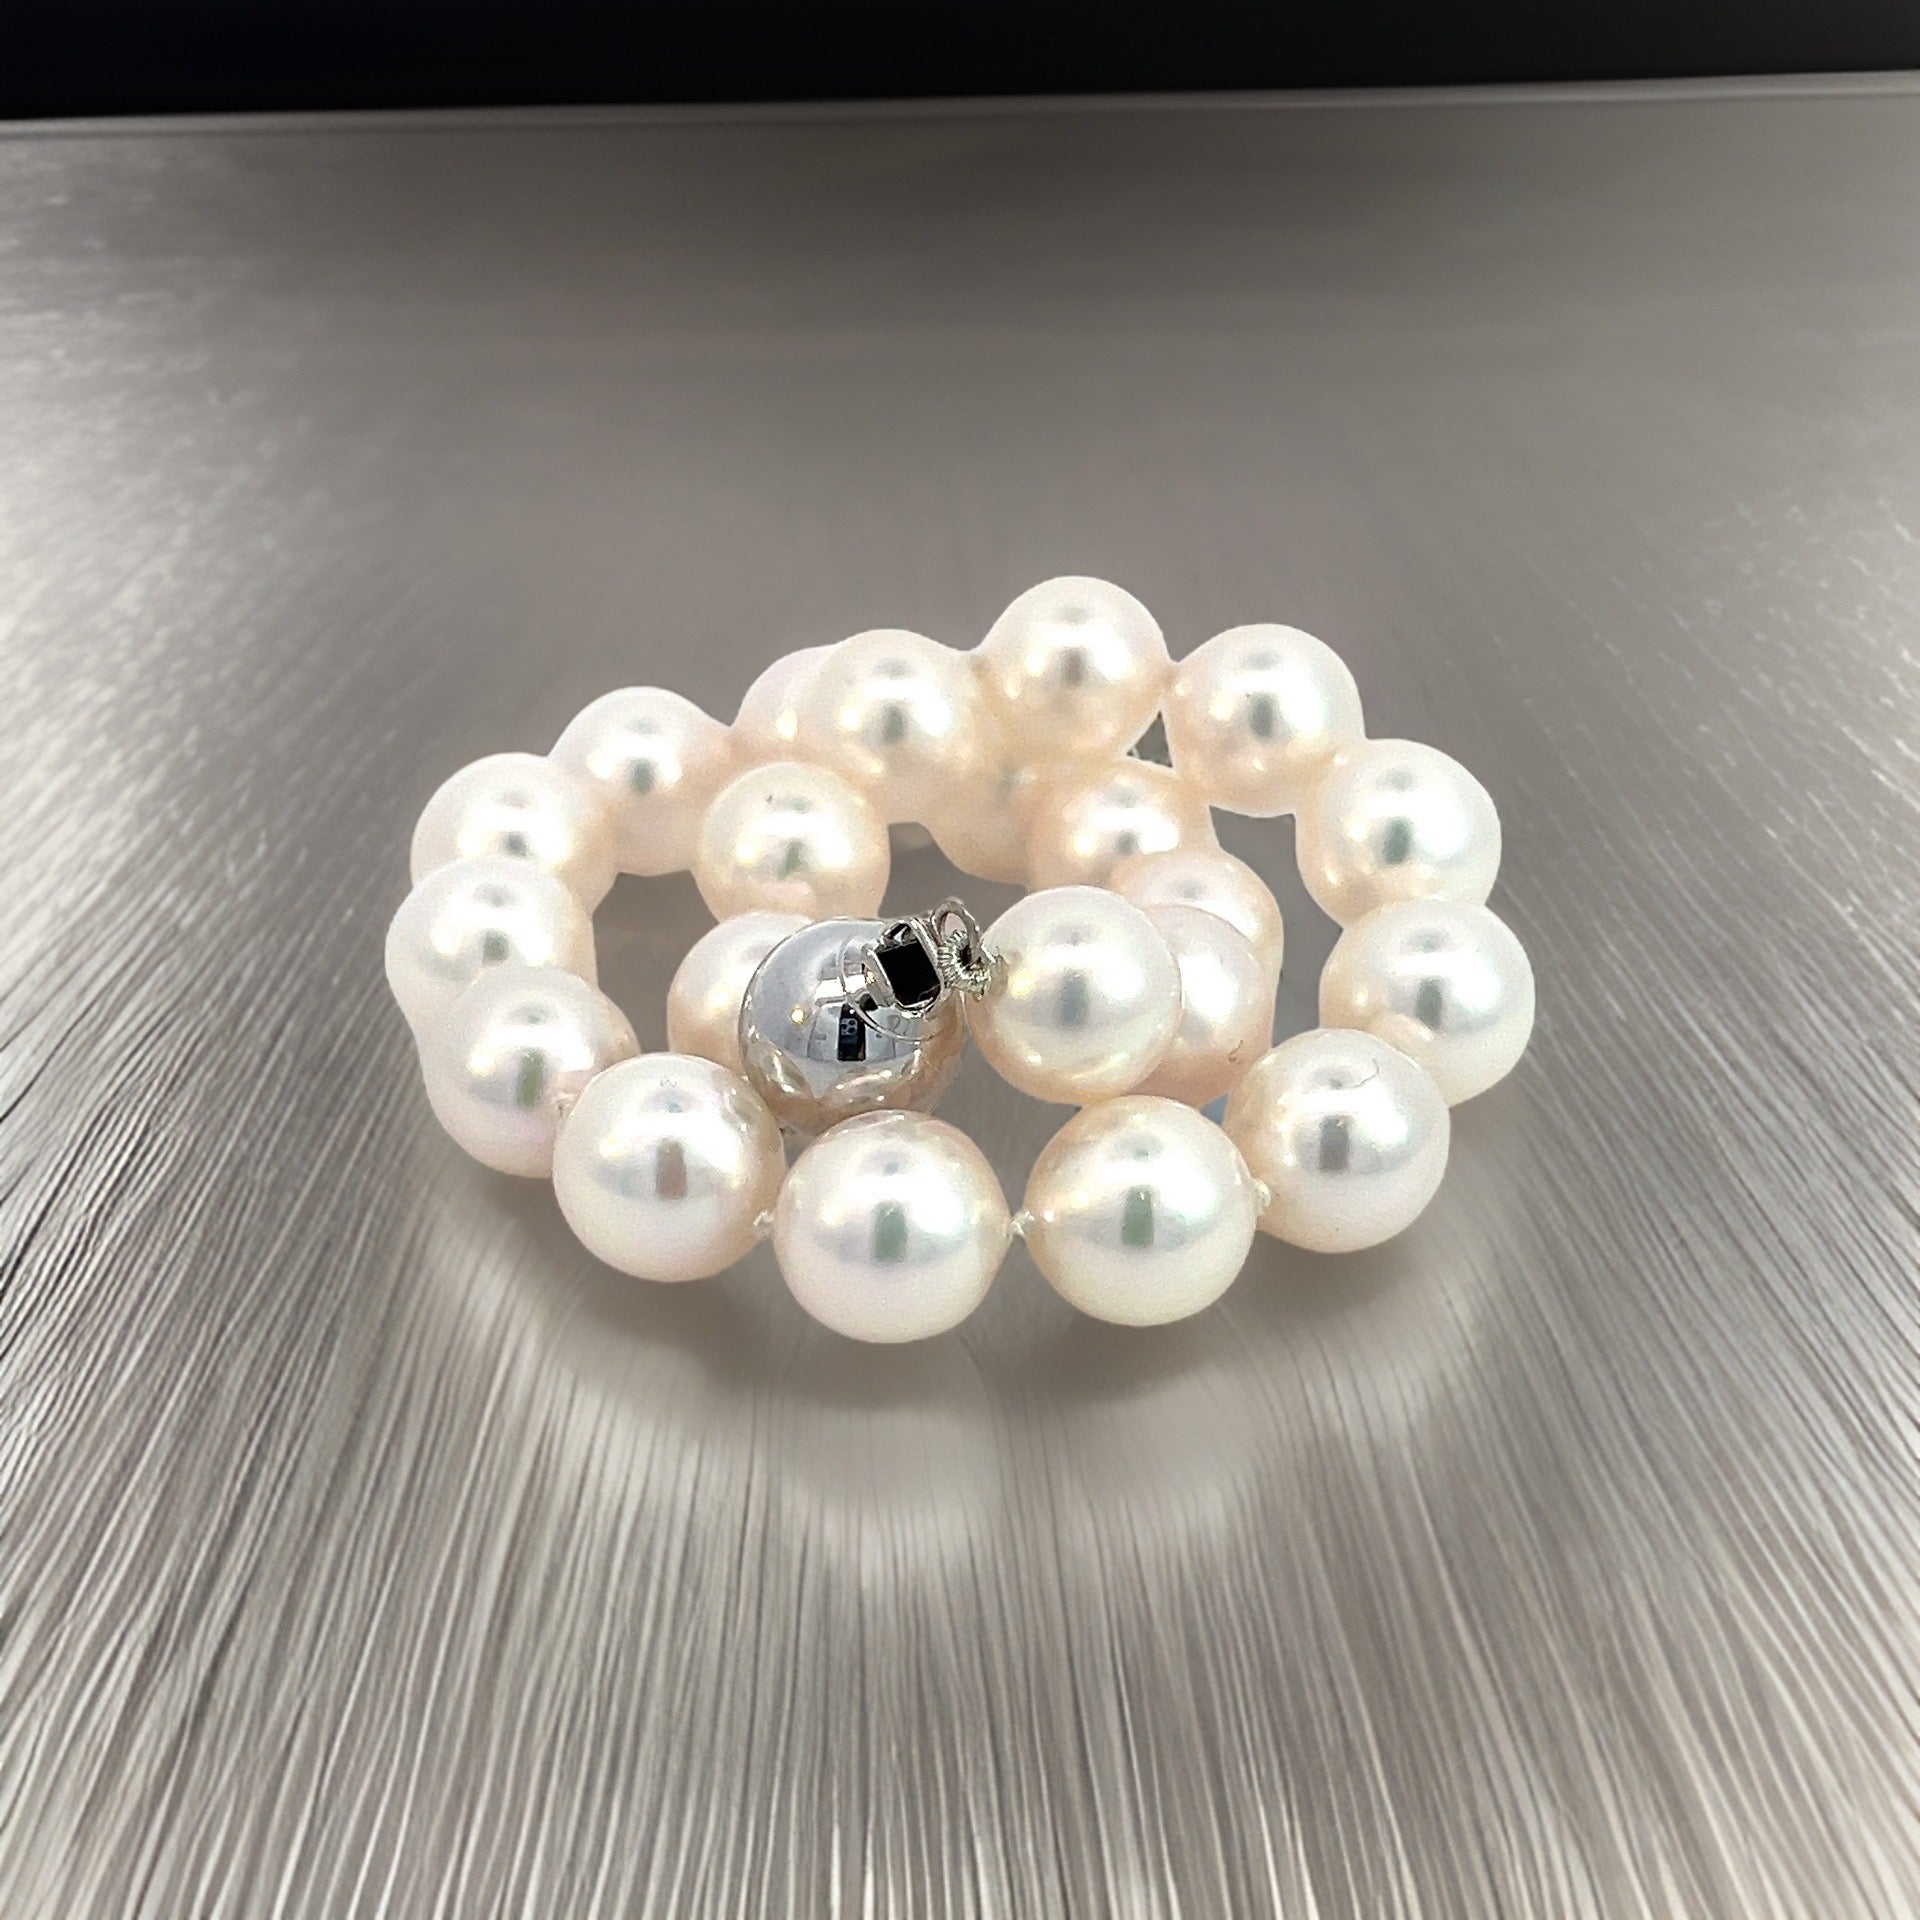 Akoya Pearl Bracelet 7.5" 14k White Gold 8 mm Certified $2,950 011823 - Certified Fine Jewelry